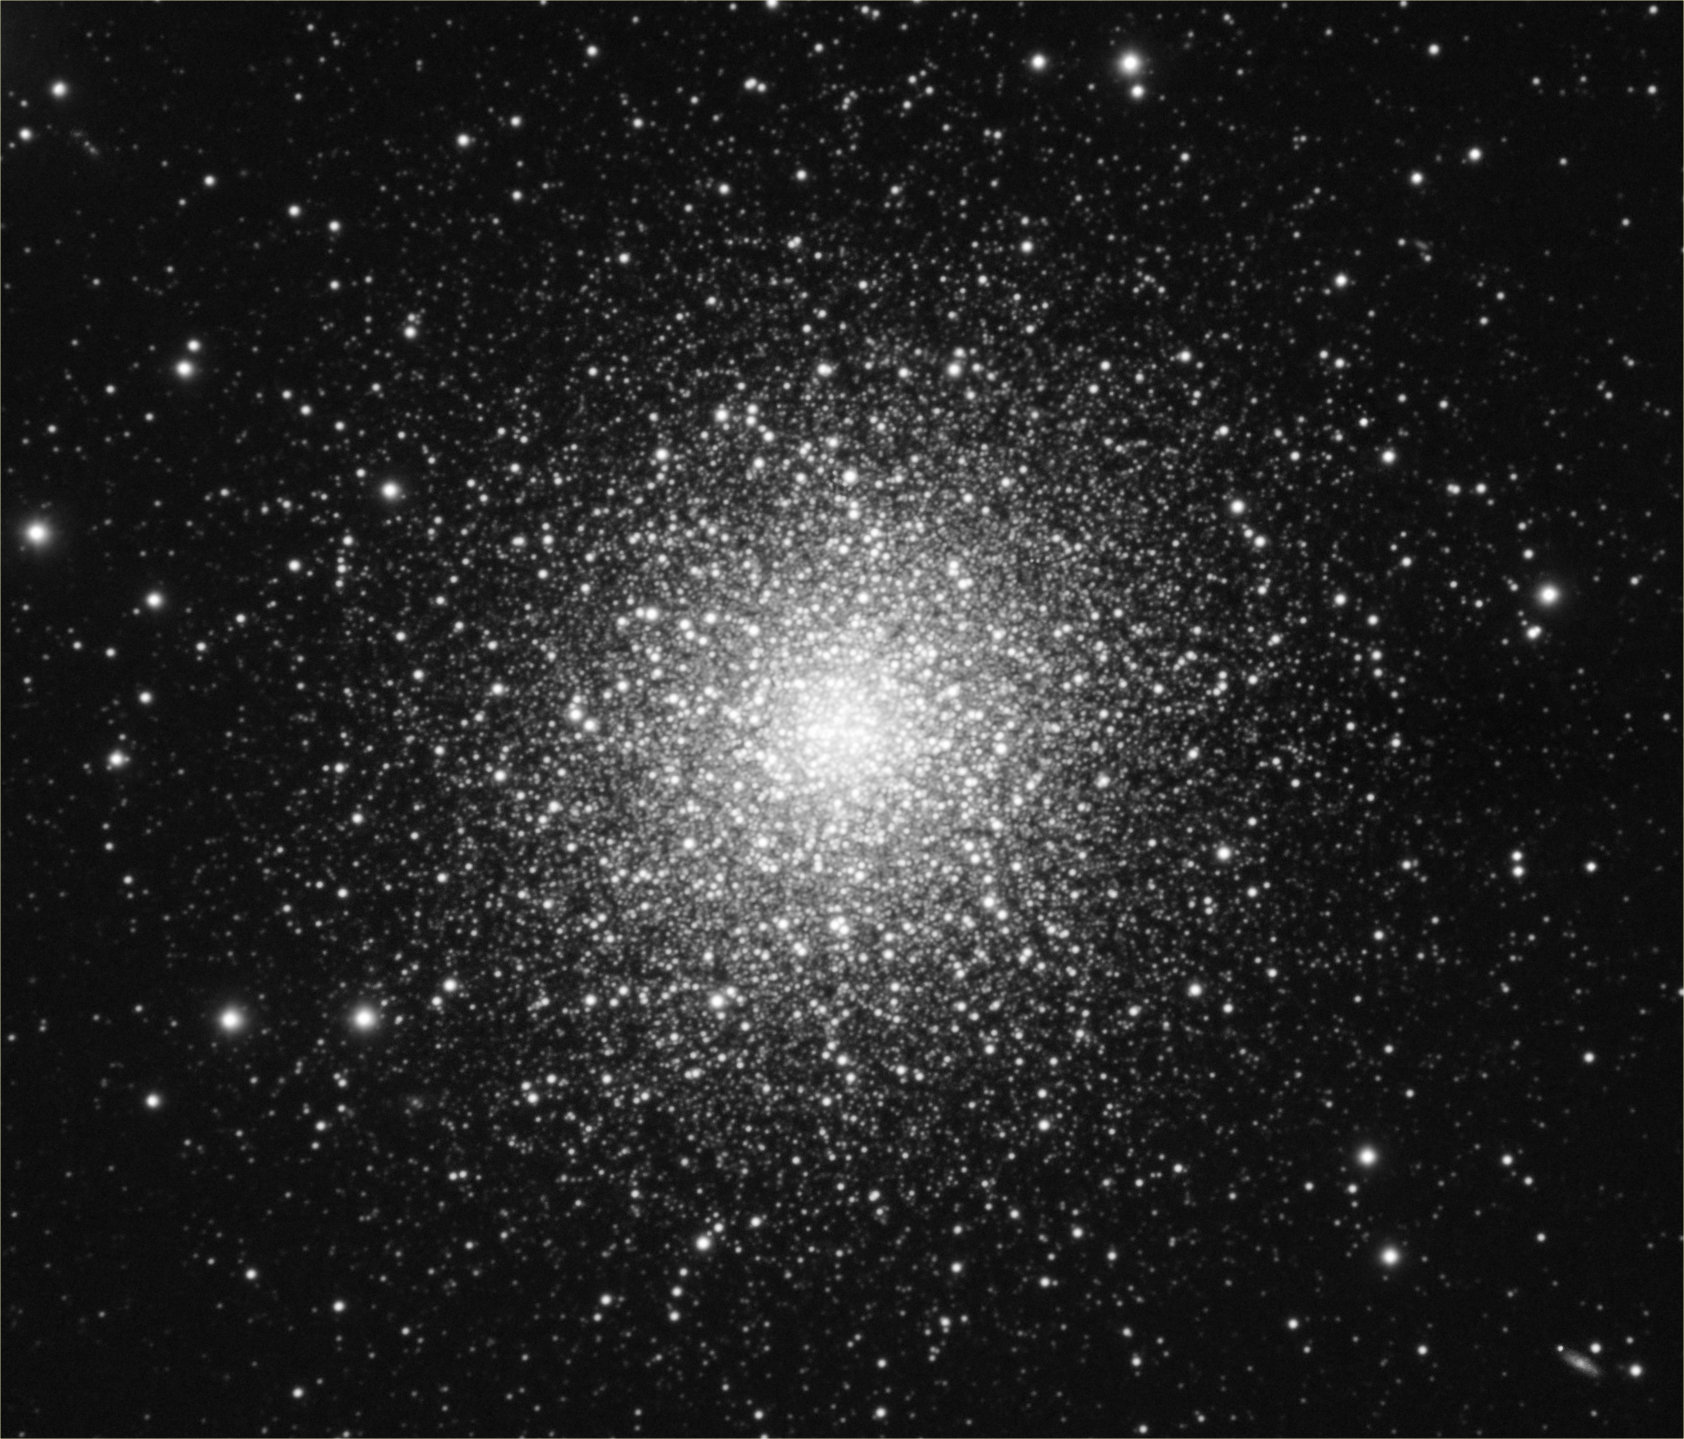 Hercules Globular Cluster - M13